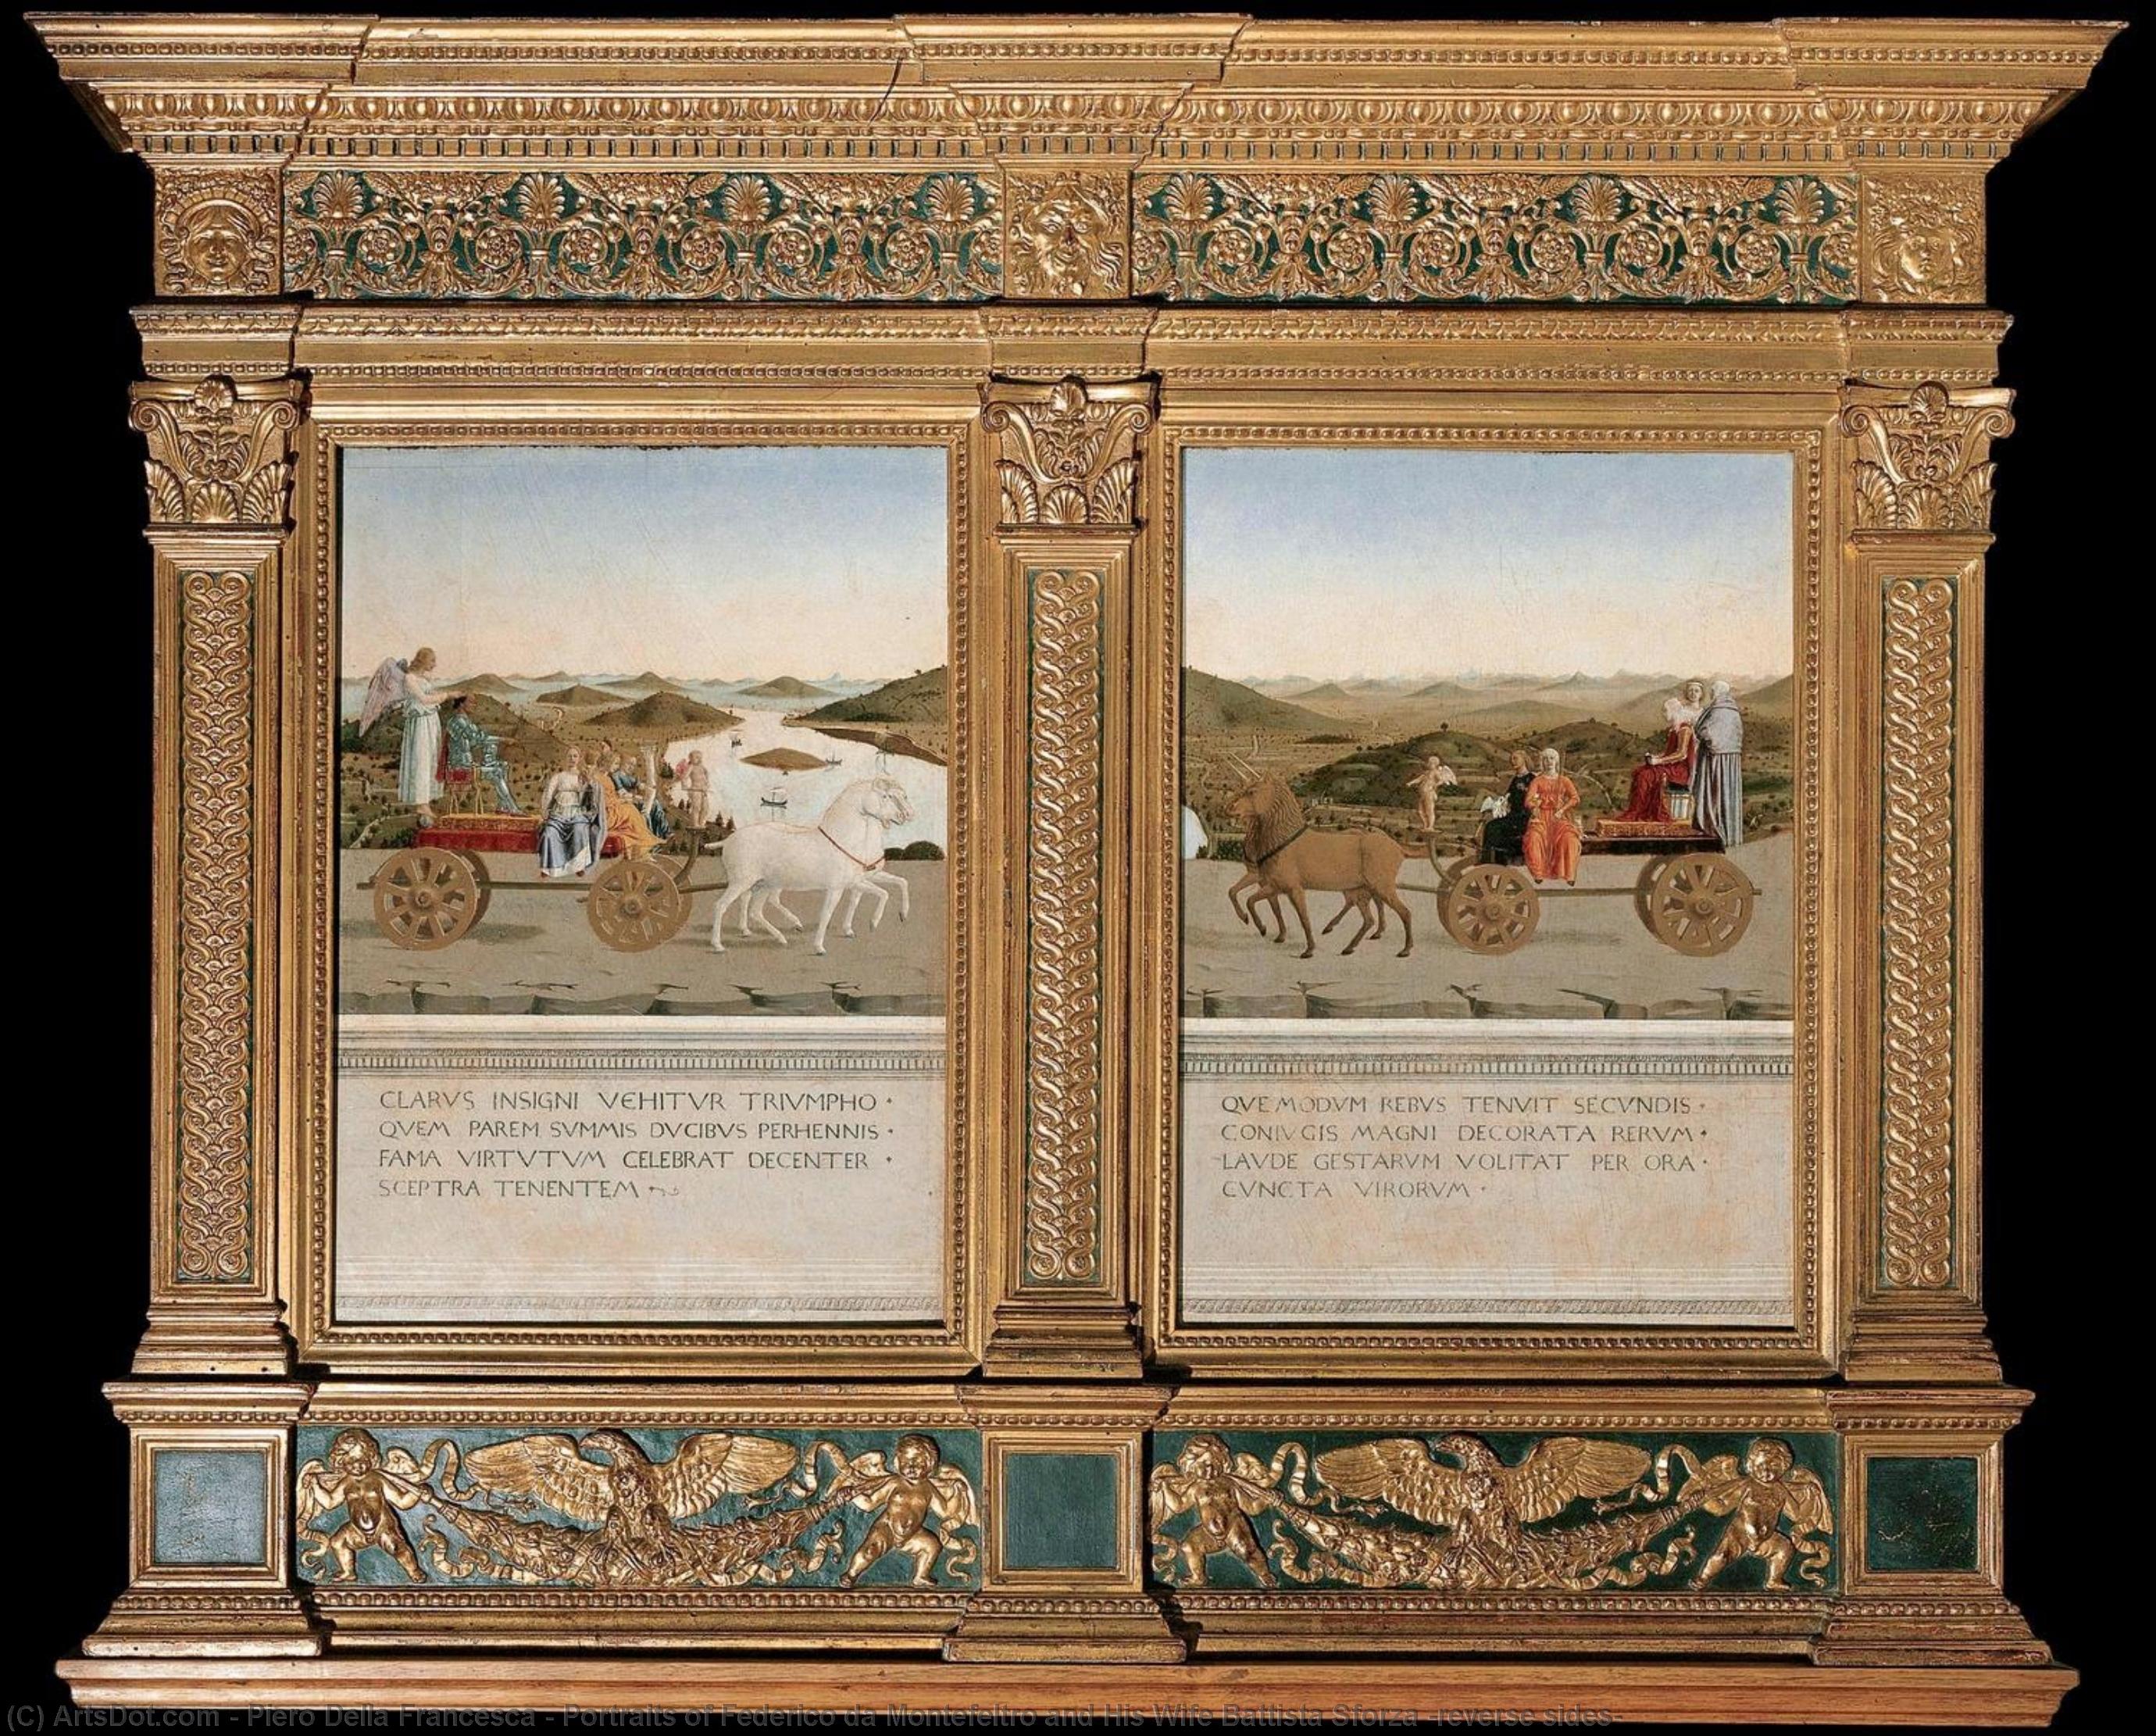 WikiOO.org - Encyclopedia of Fine Arts - Maleri, Artwork Piero Della Francesca - Portraits of Federico da Montefeltro and His Wife Battista Sforza (reverse sides)